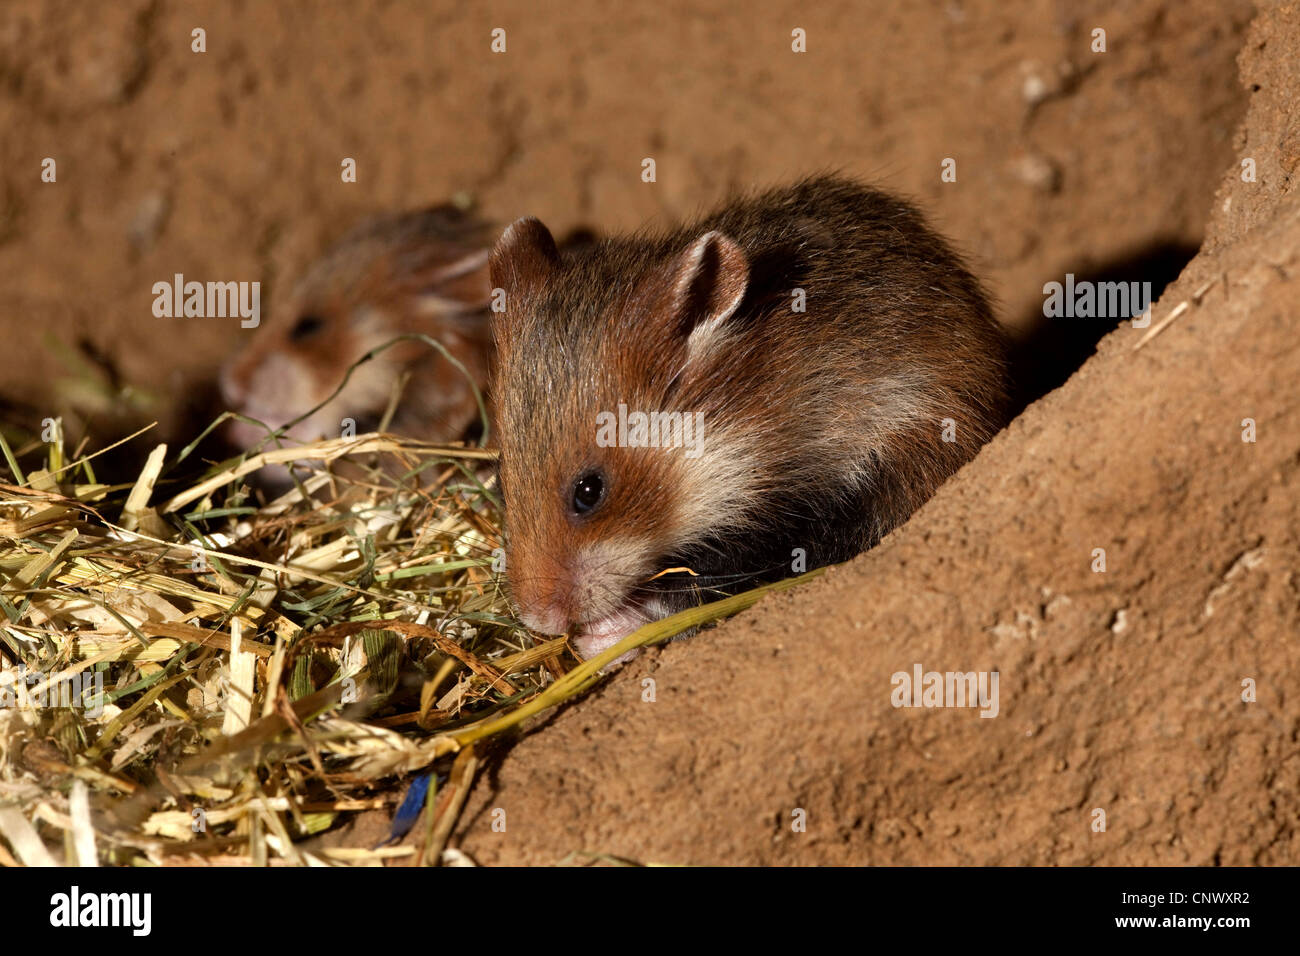 Hamster commun, black-bellied grand hamster (Cricetus cricetus), jeune animal dans un subterraneous den Banque D'Images